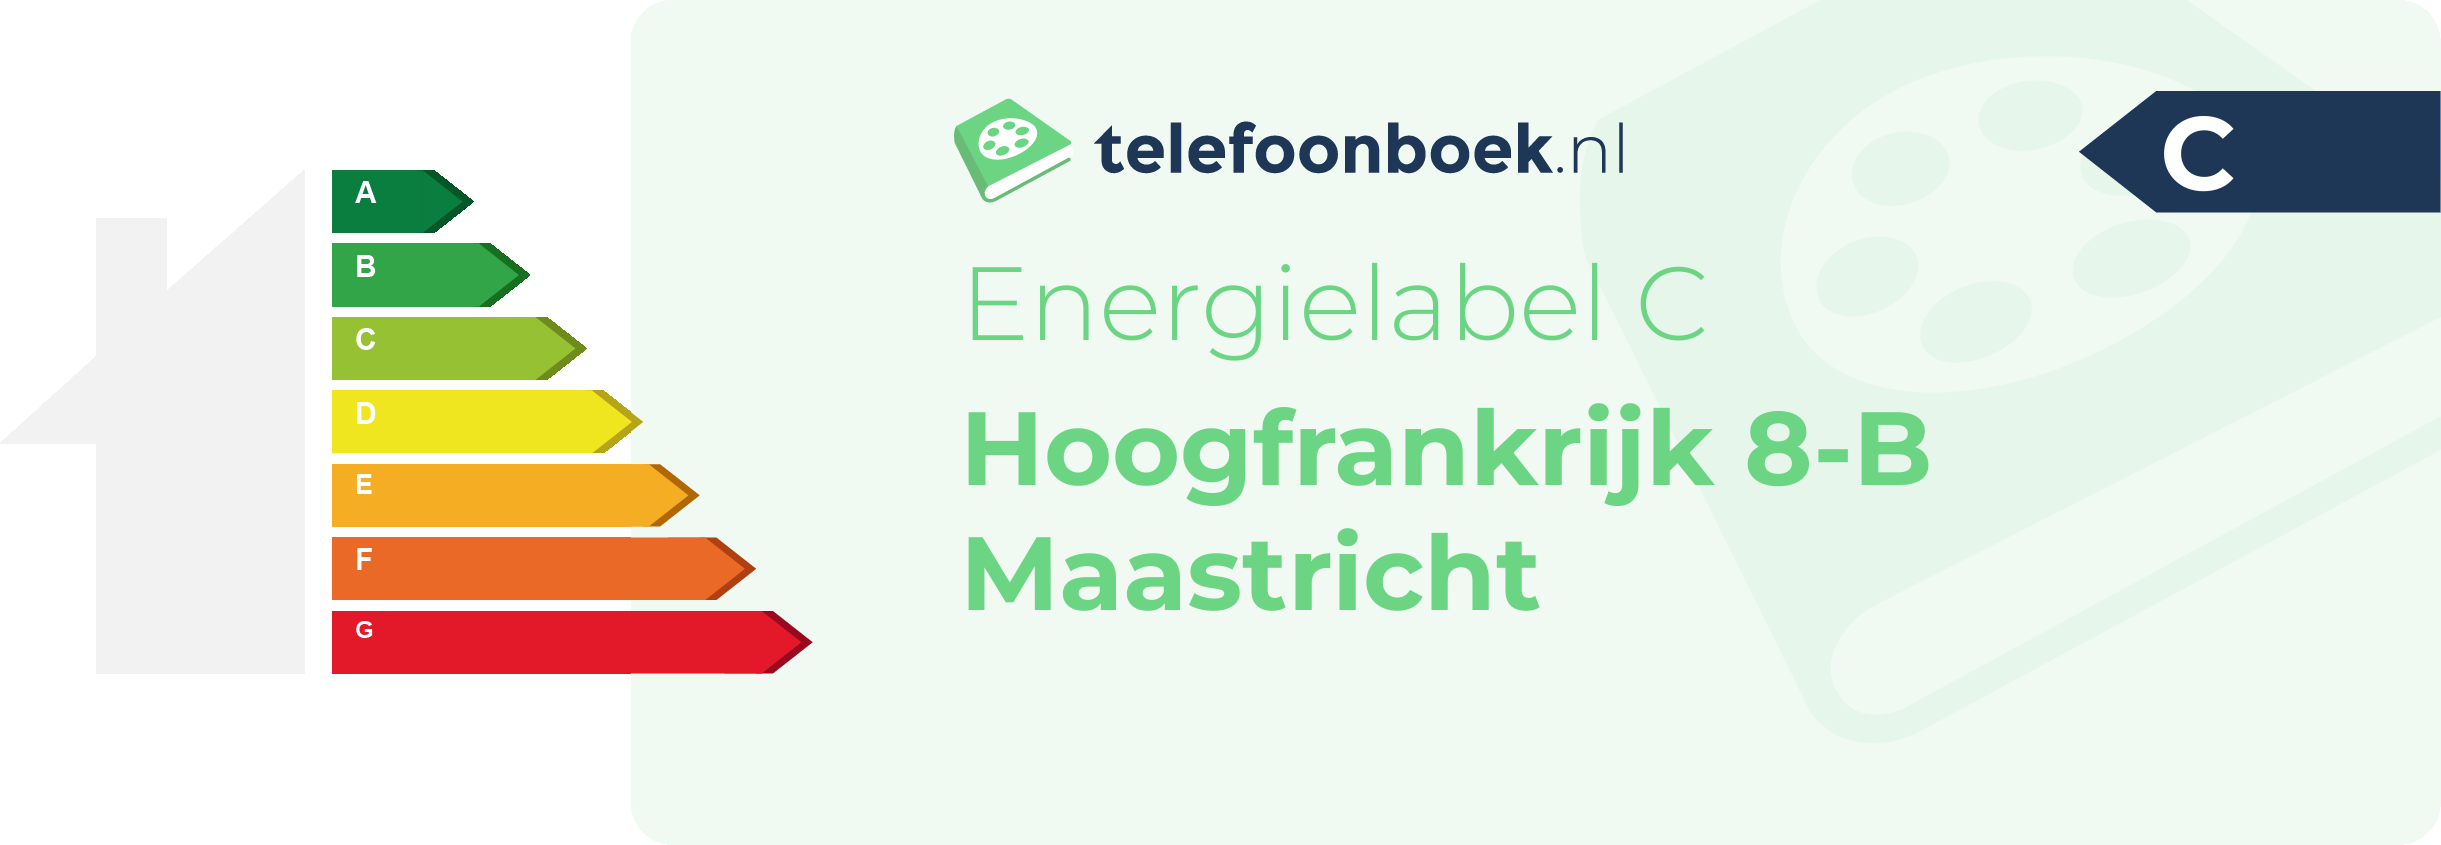 Energielabel Hoogfrankrijk 8-B Maastricht